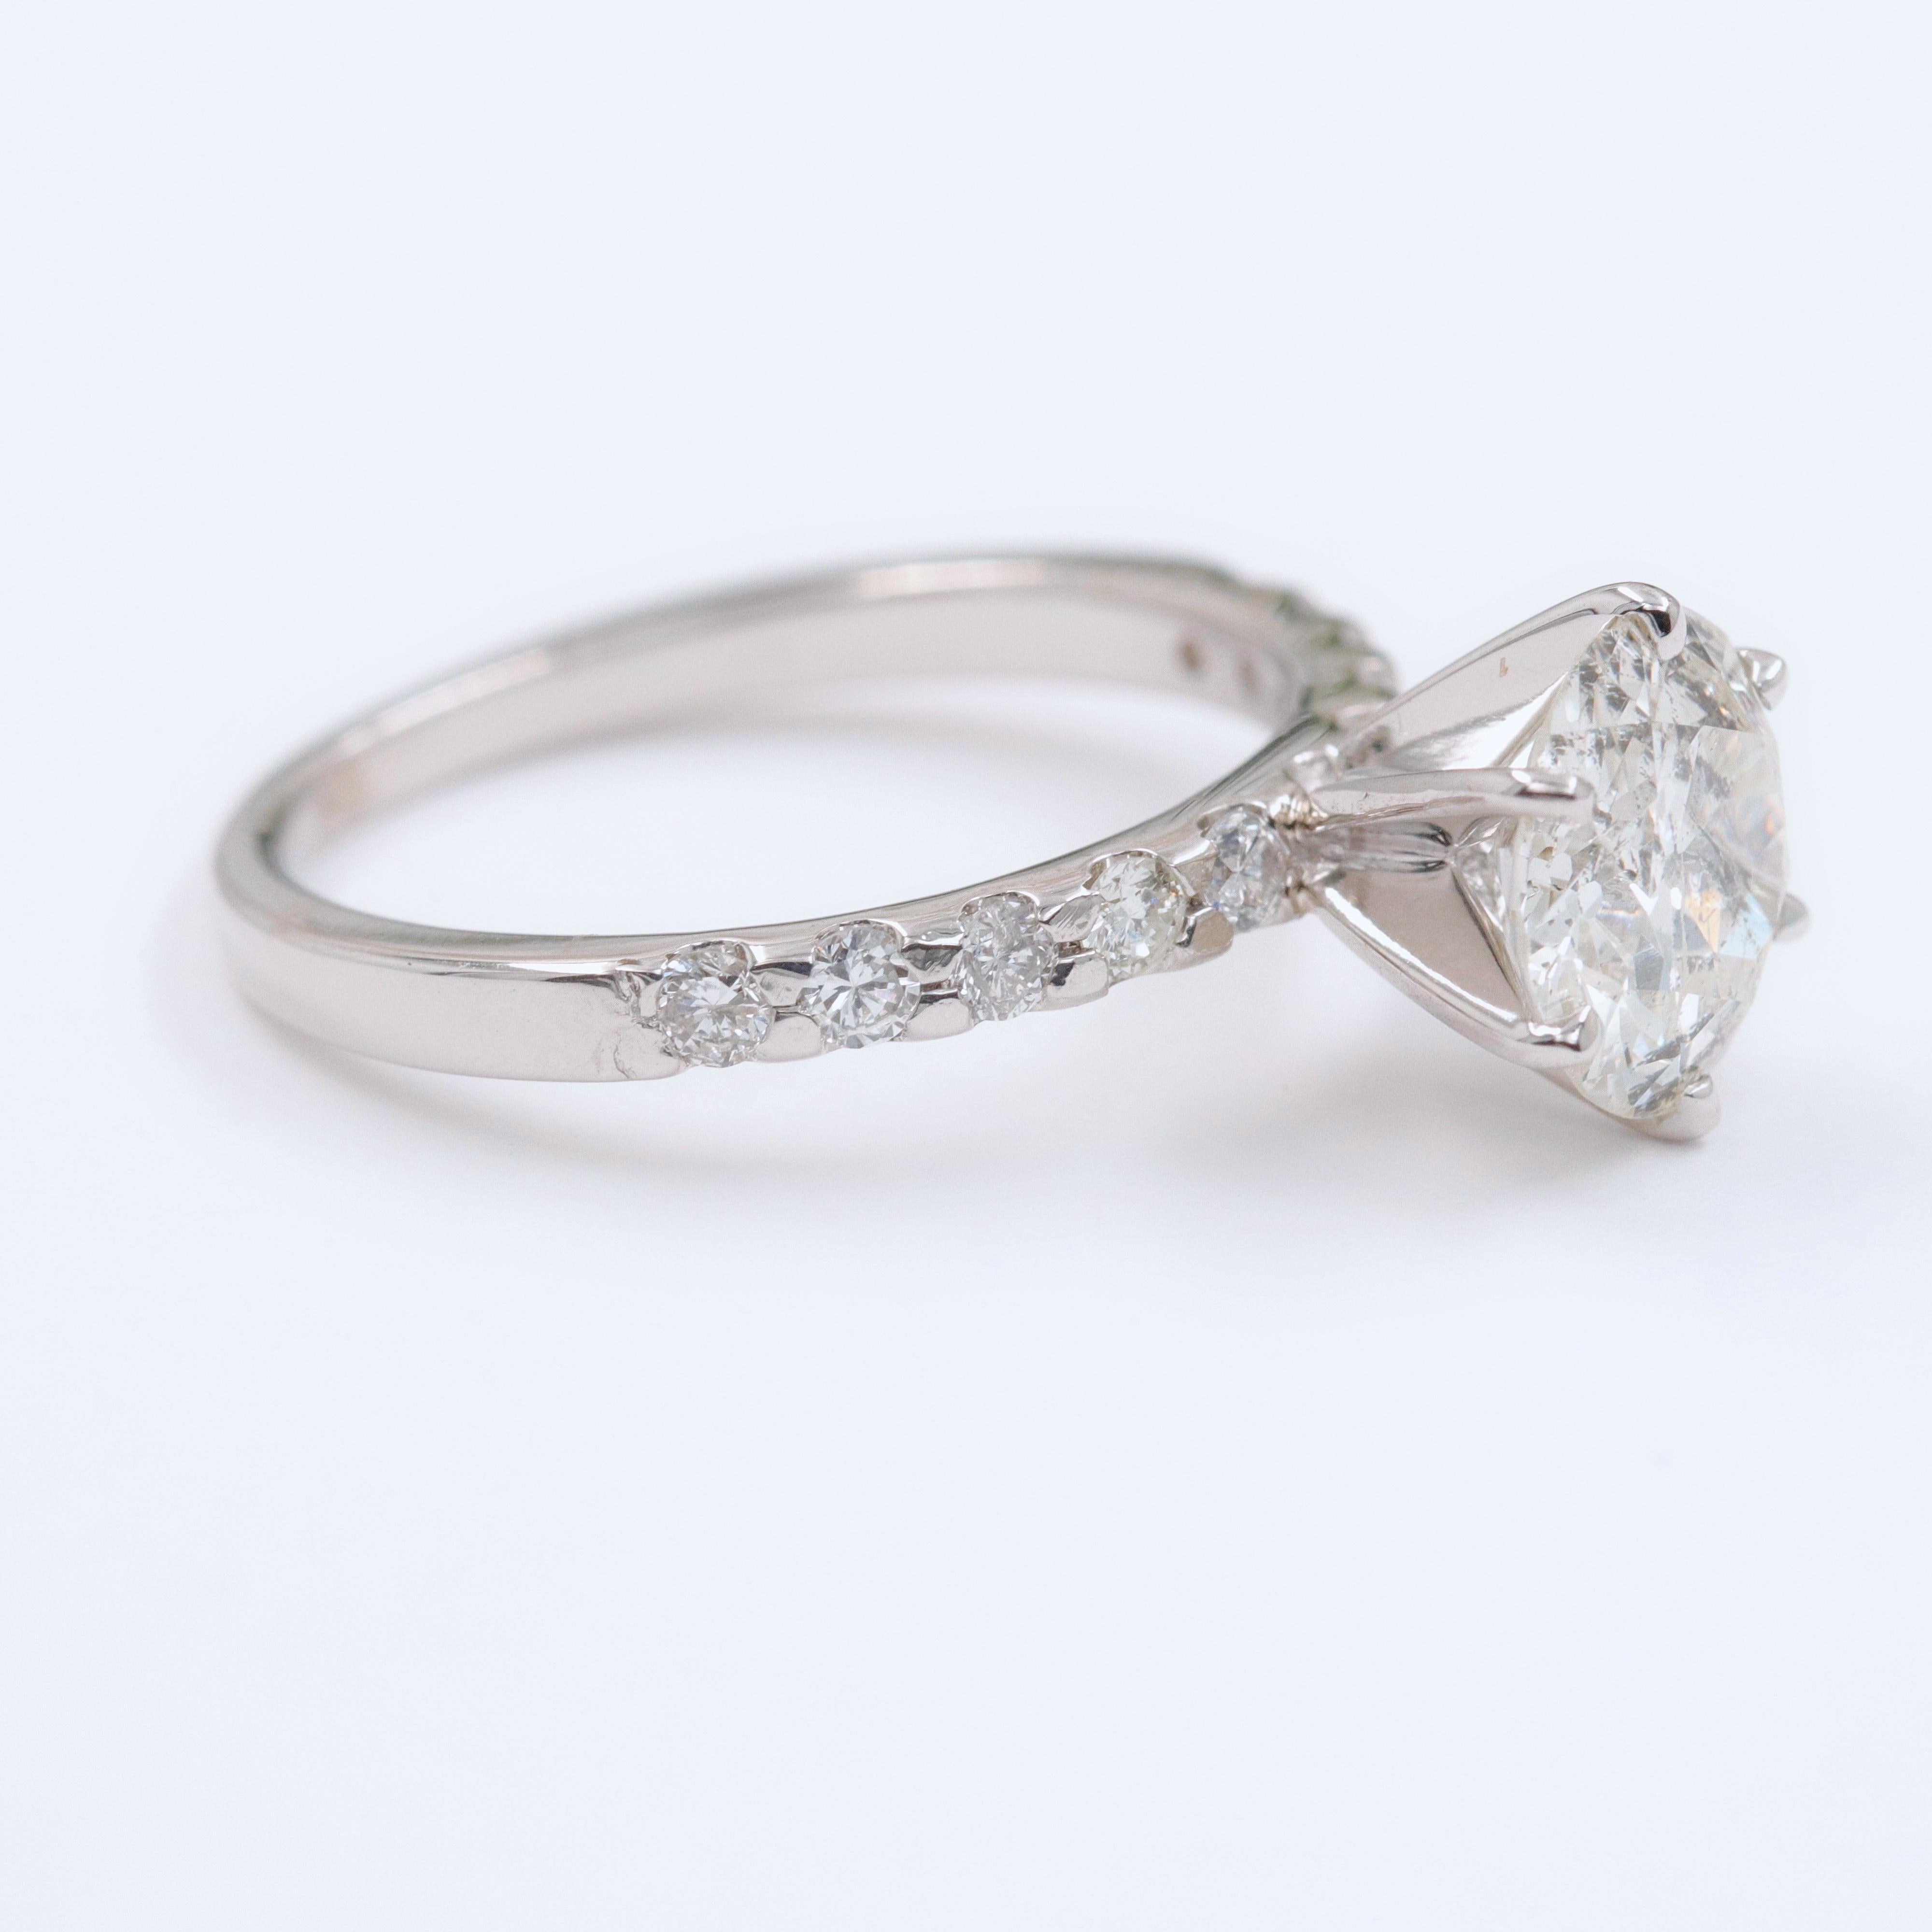 Old Cut Diamond Engagement Ring 1.94 Carat Set in 14 Karat White Gold 1